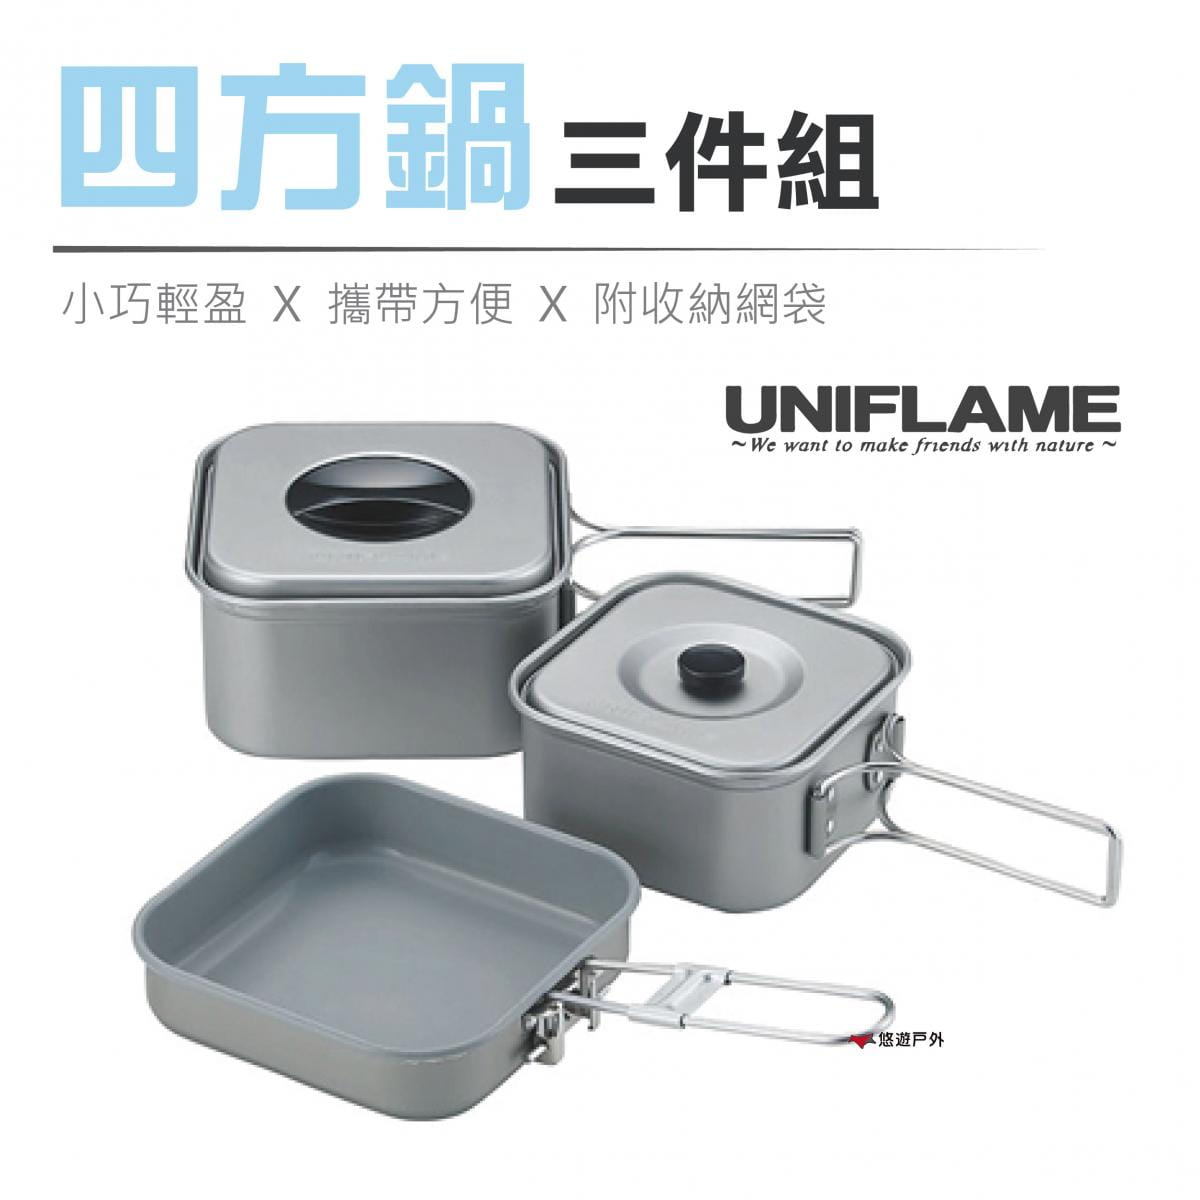 【日本 UNIFLAME】四方鍋三件組 U667705 方型鍋 便攜鍋具 居家 露營 悠遊戶外 0